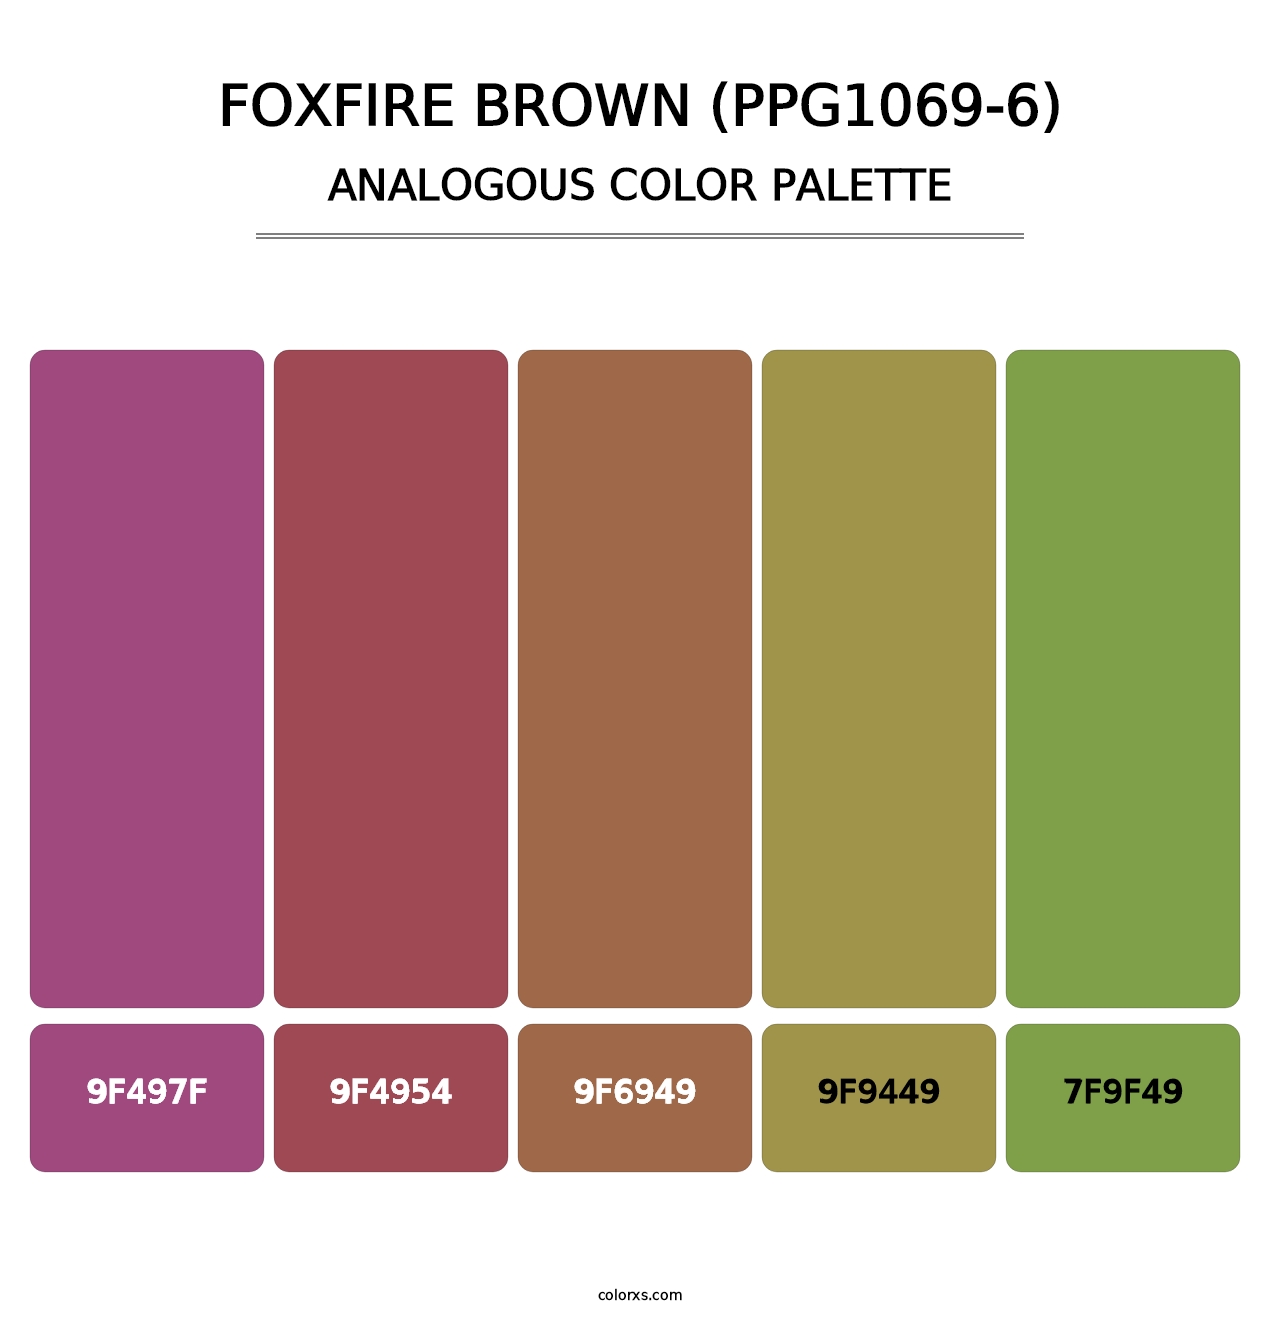 Foxfire Brown (PPG1069-6) - Analogous Color Palette